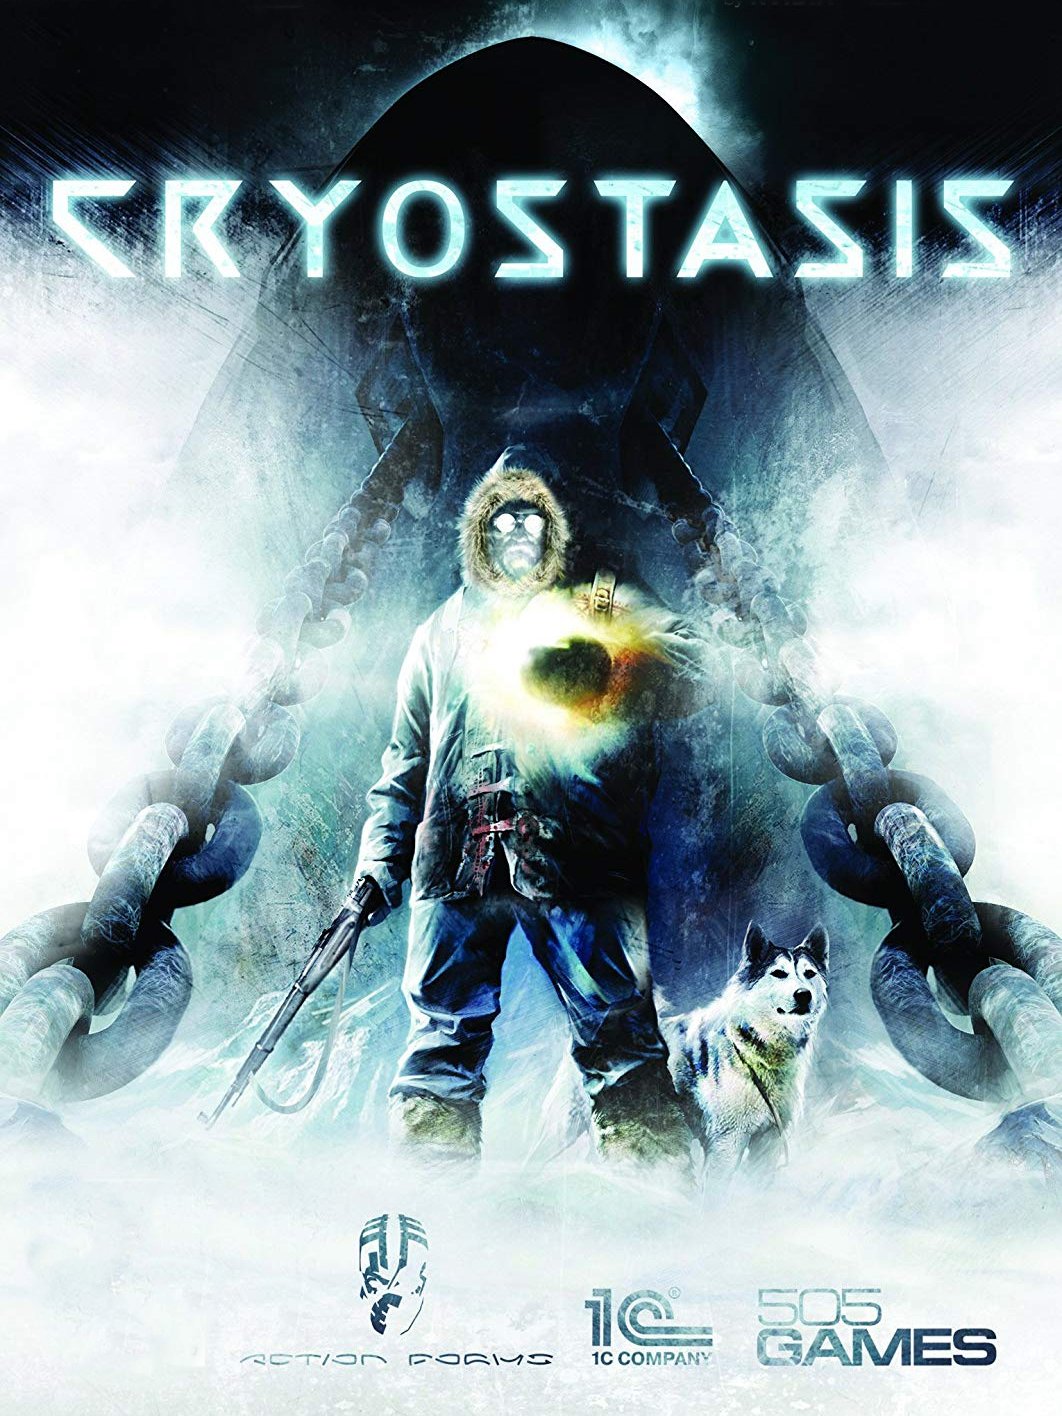 Image of Cryostasis